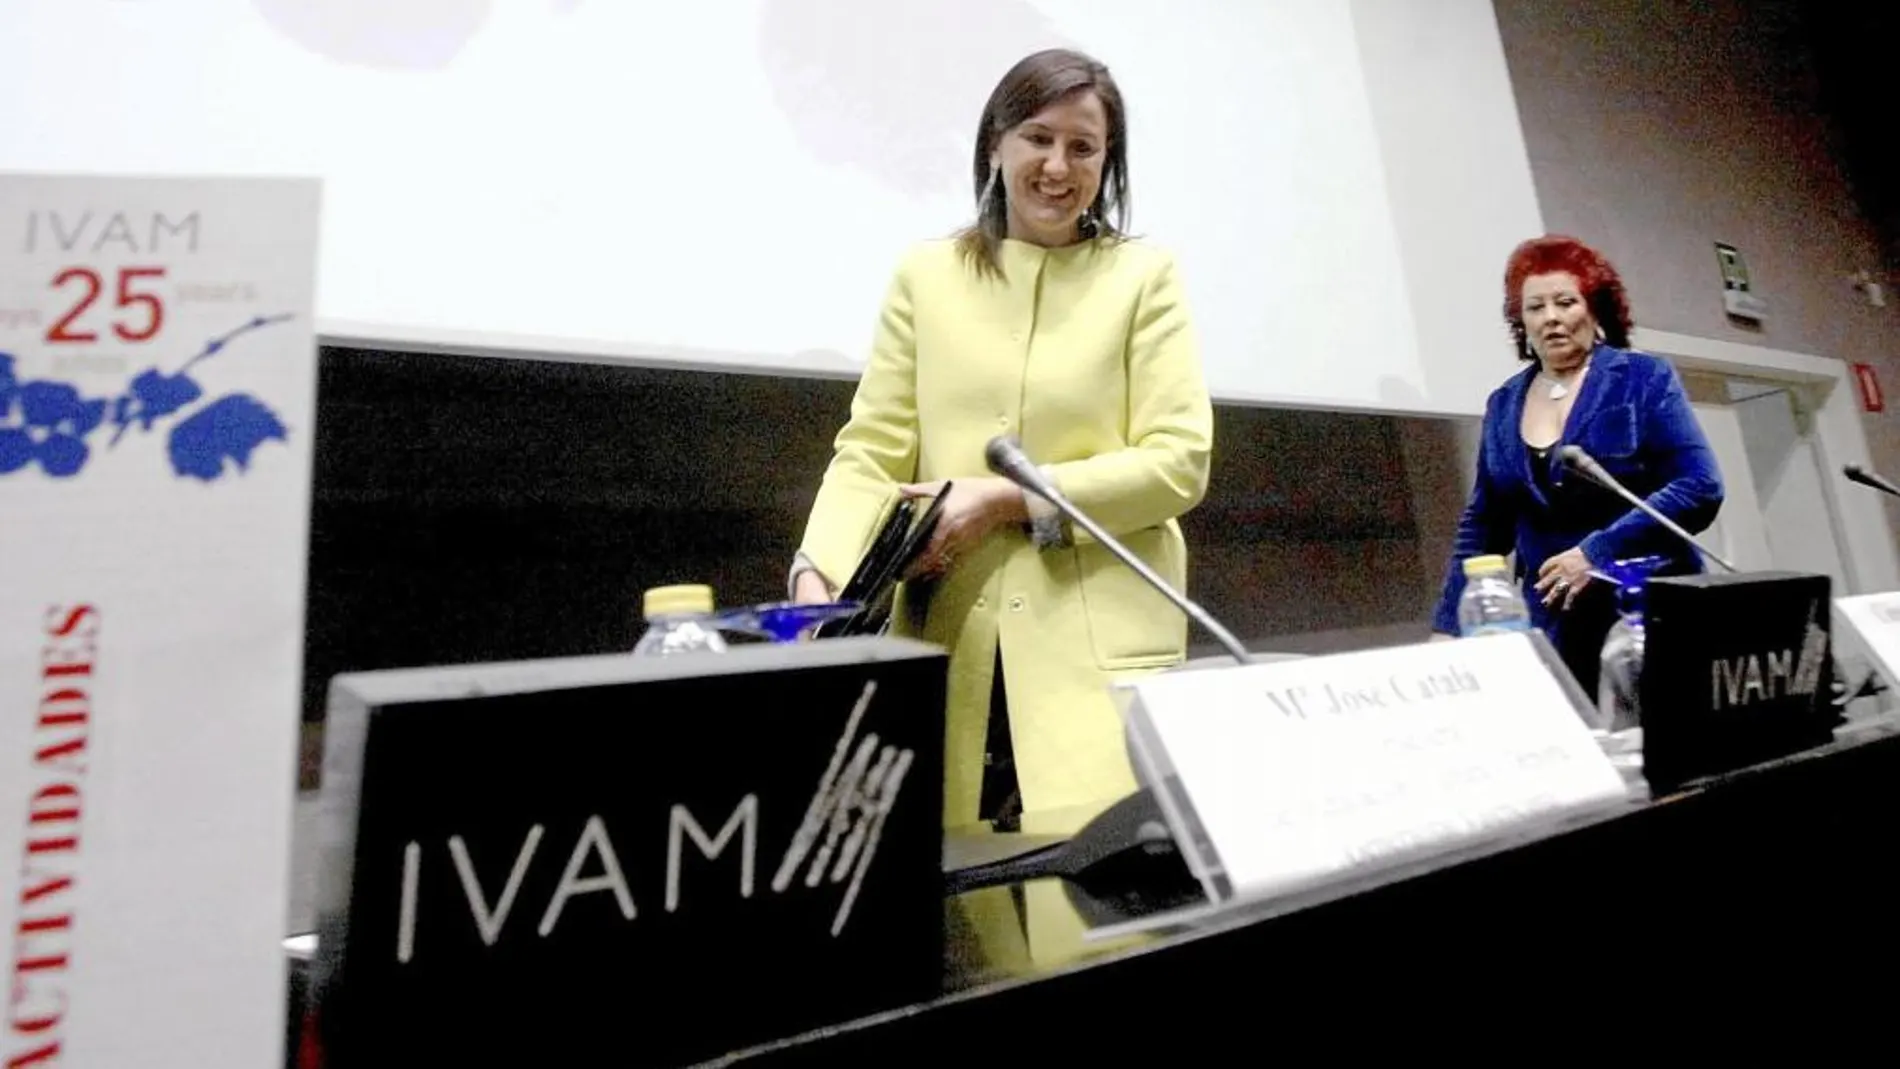 El IVAM celebra su XXV aniversario con más de 29 exposiciones en 2014